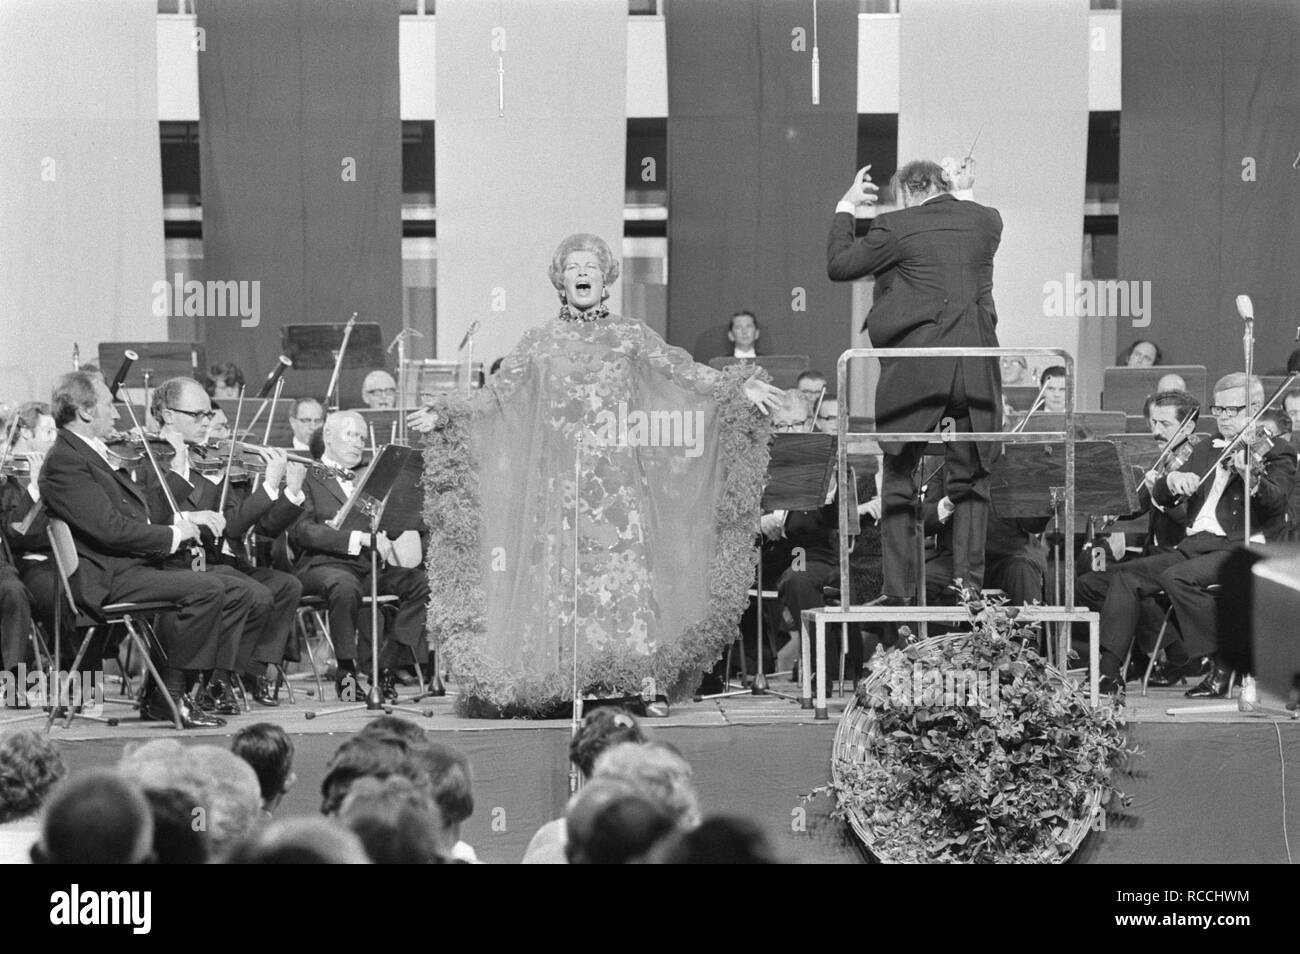 Afscheidsconcert van Gre Brouwenstijn met Concertgebouworkest in RAI Amsterdam, Bestanddeelnr 924-6783. Stock Photo